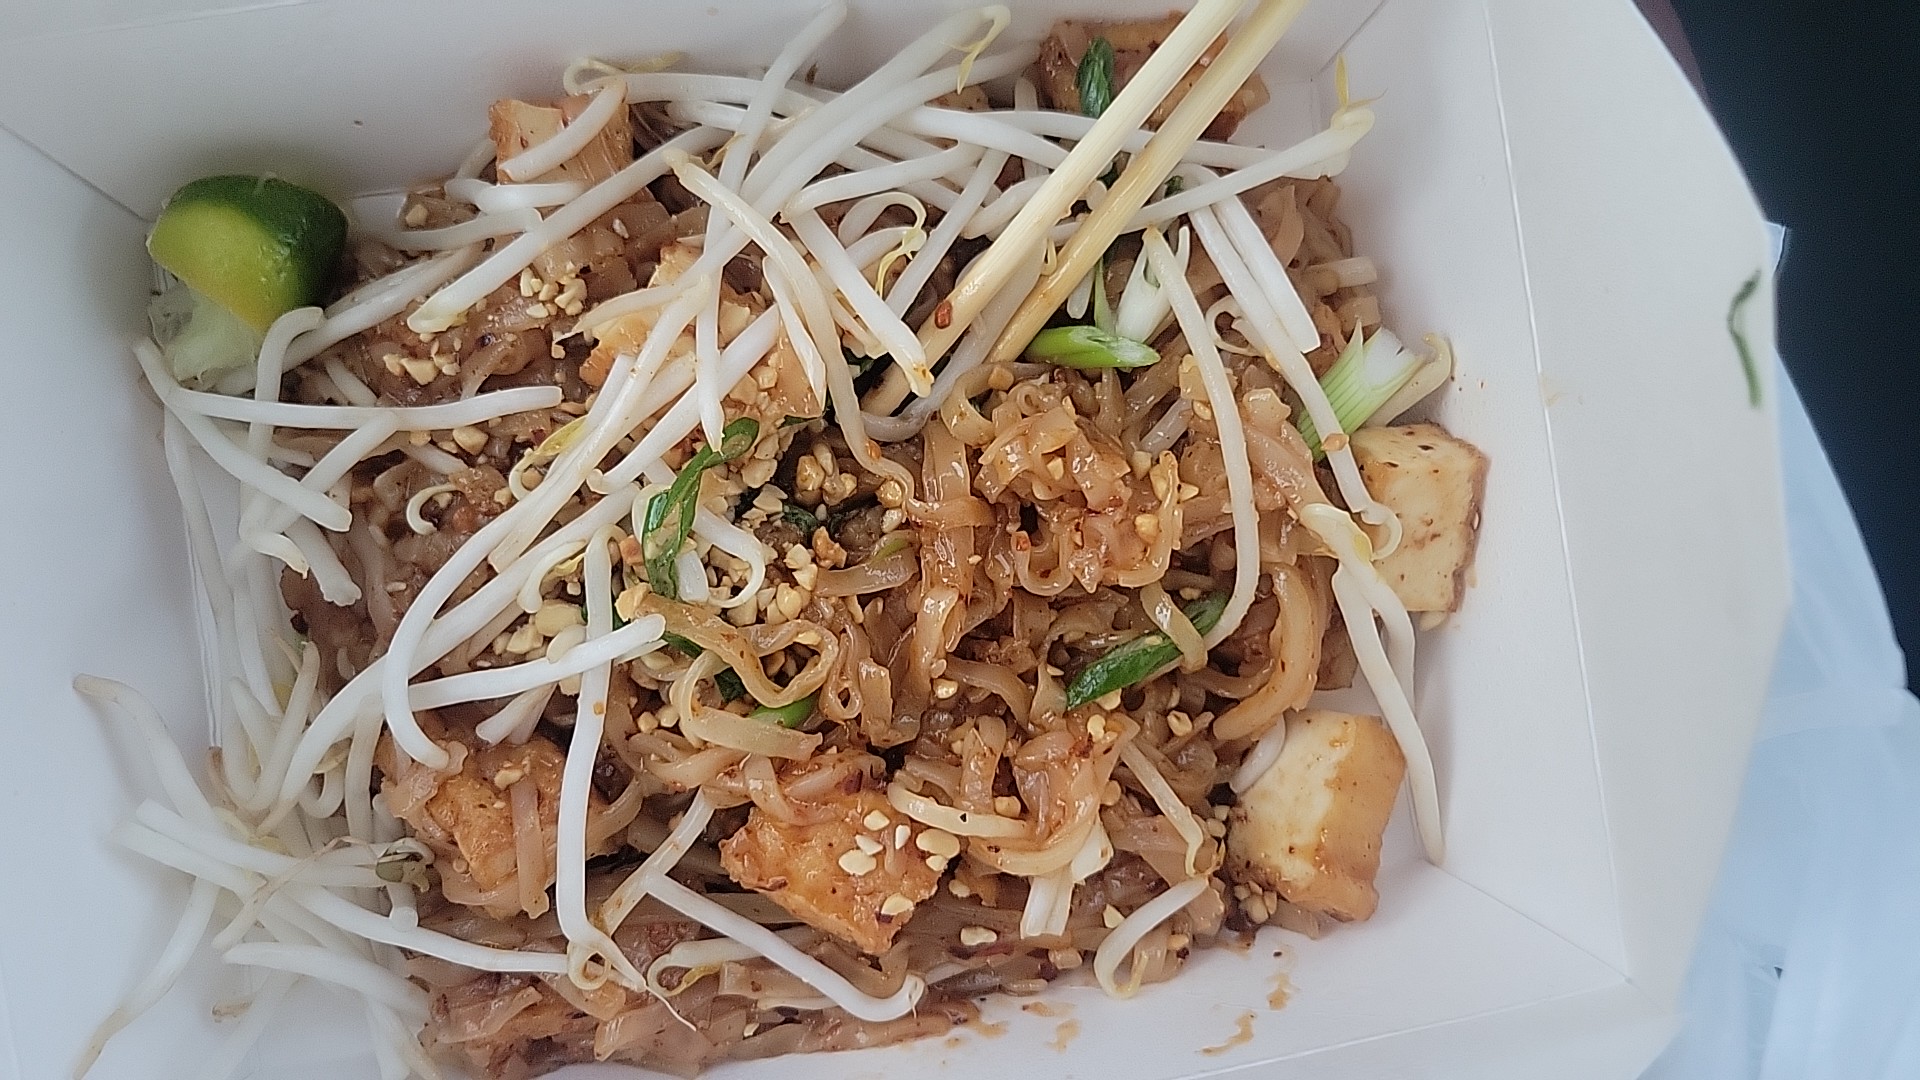 AnyThing Else? Thai Food